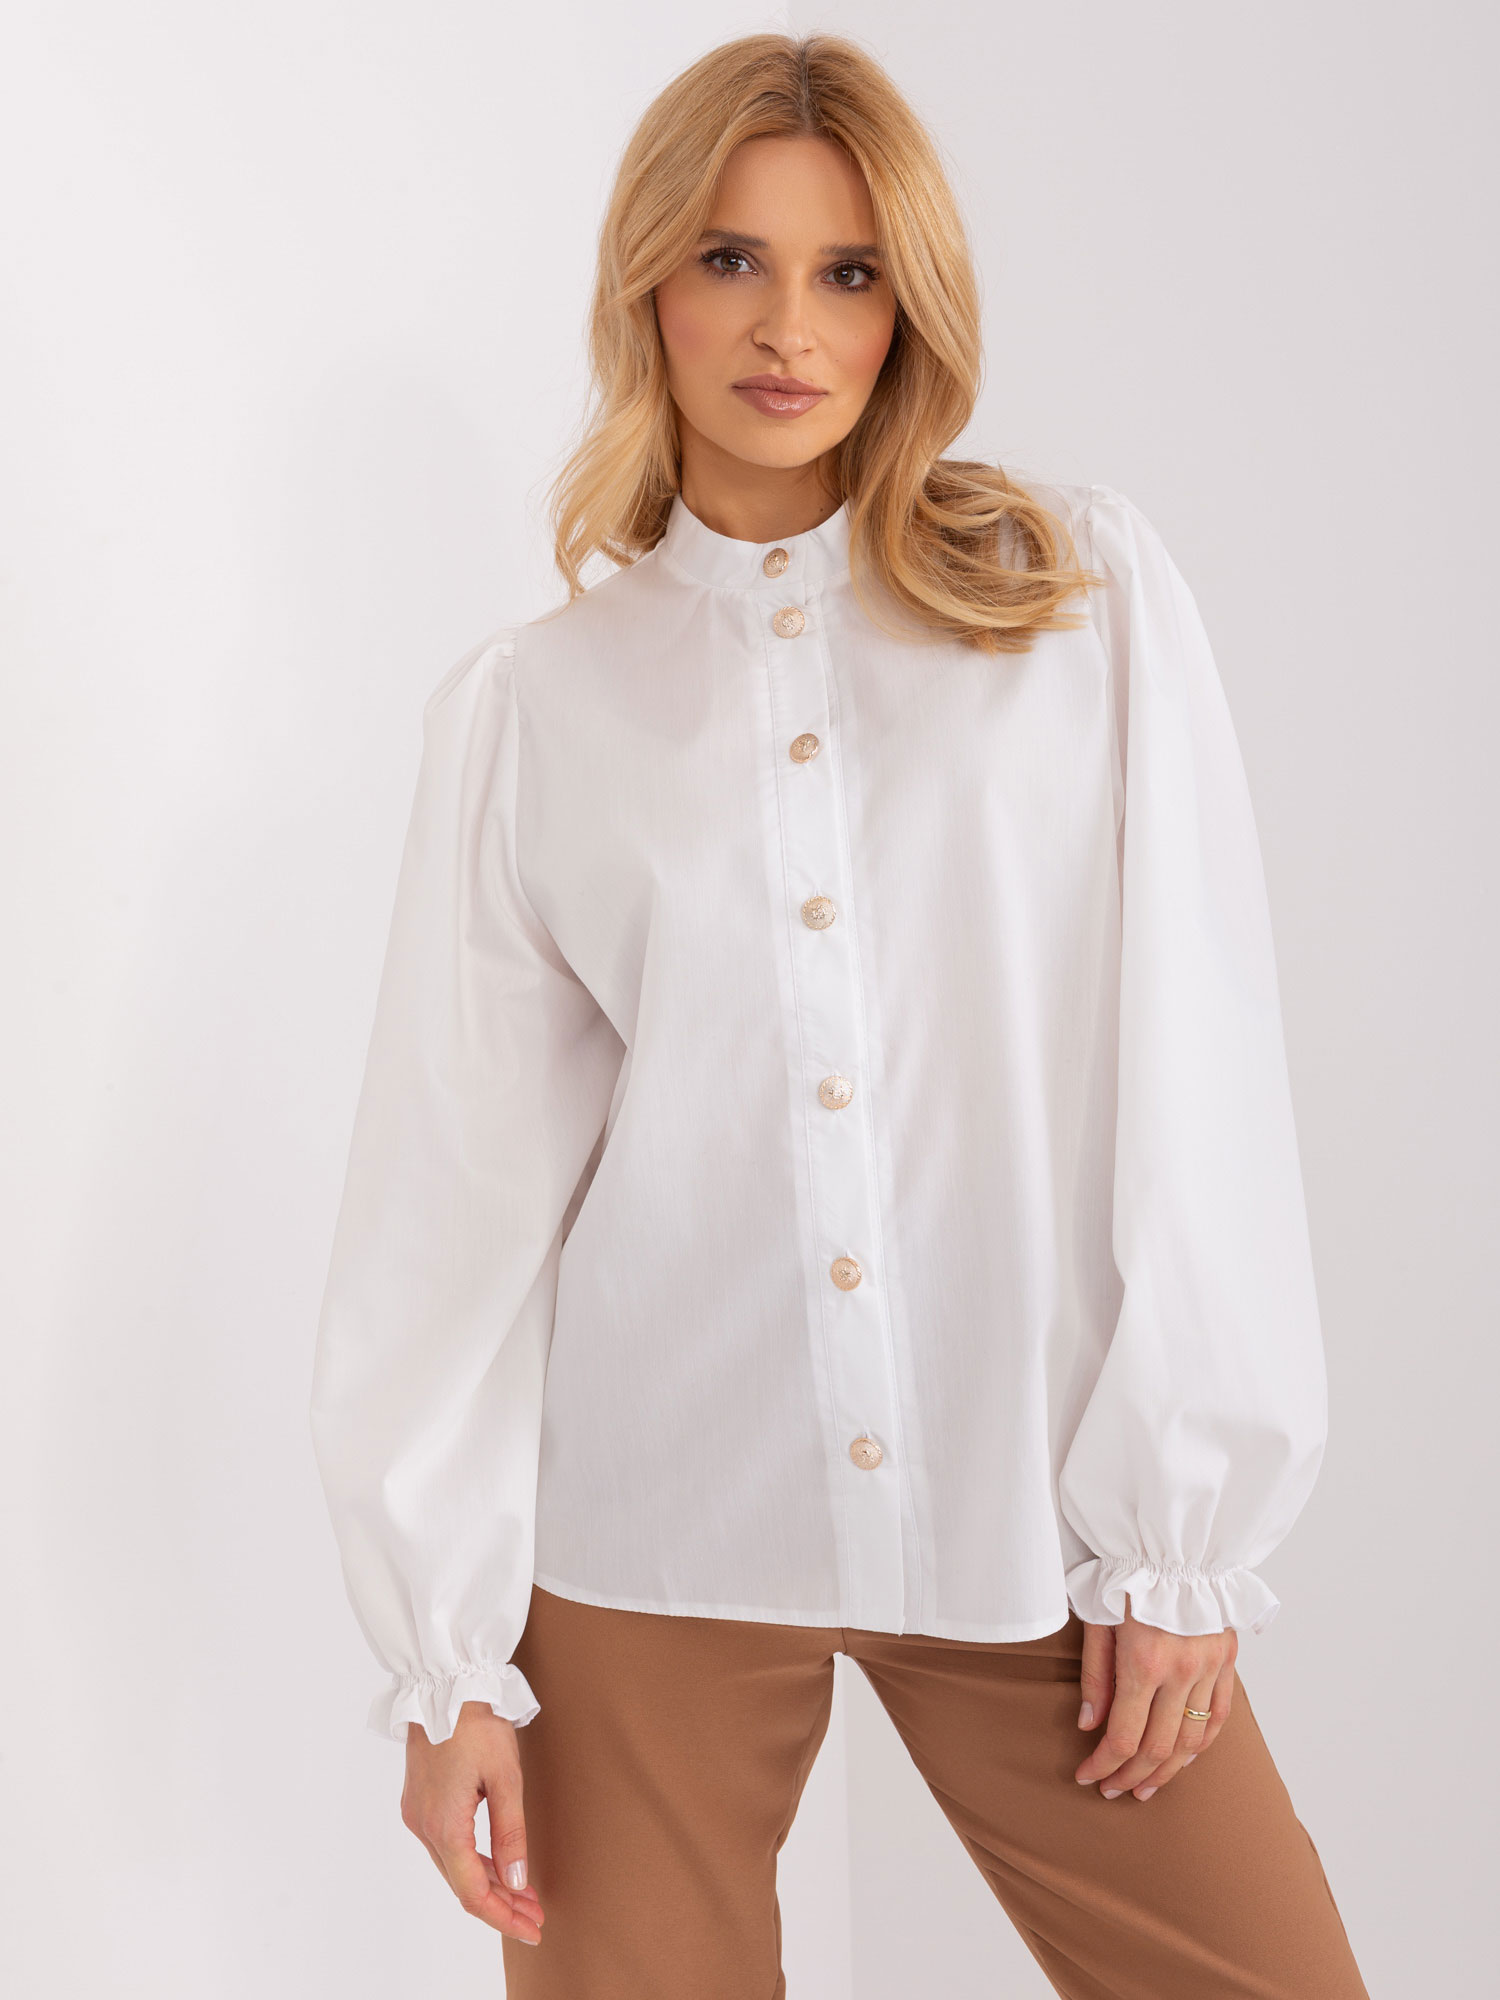 Bílá košile s nabíranými rukávy LK-KS-509484.87-ecru Velikost: S/M